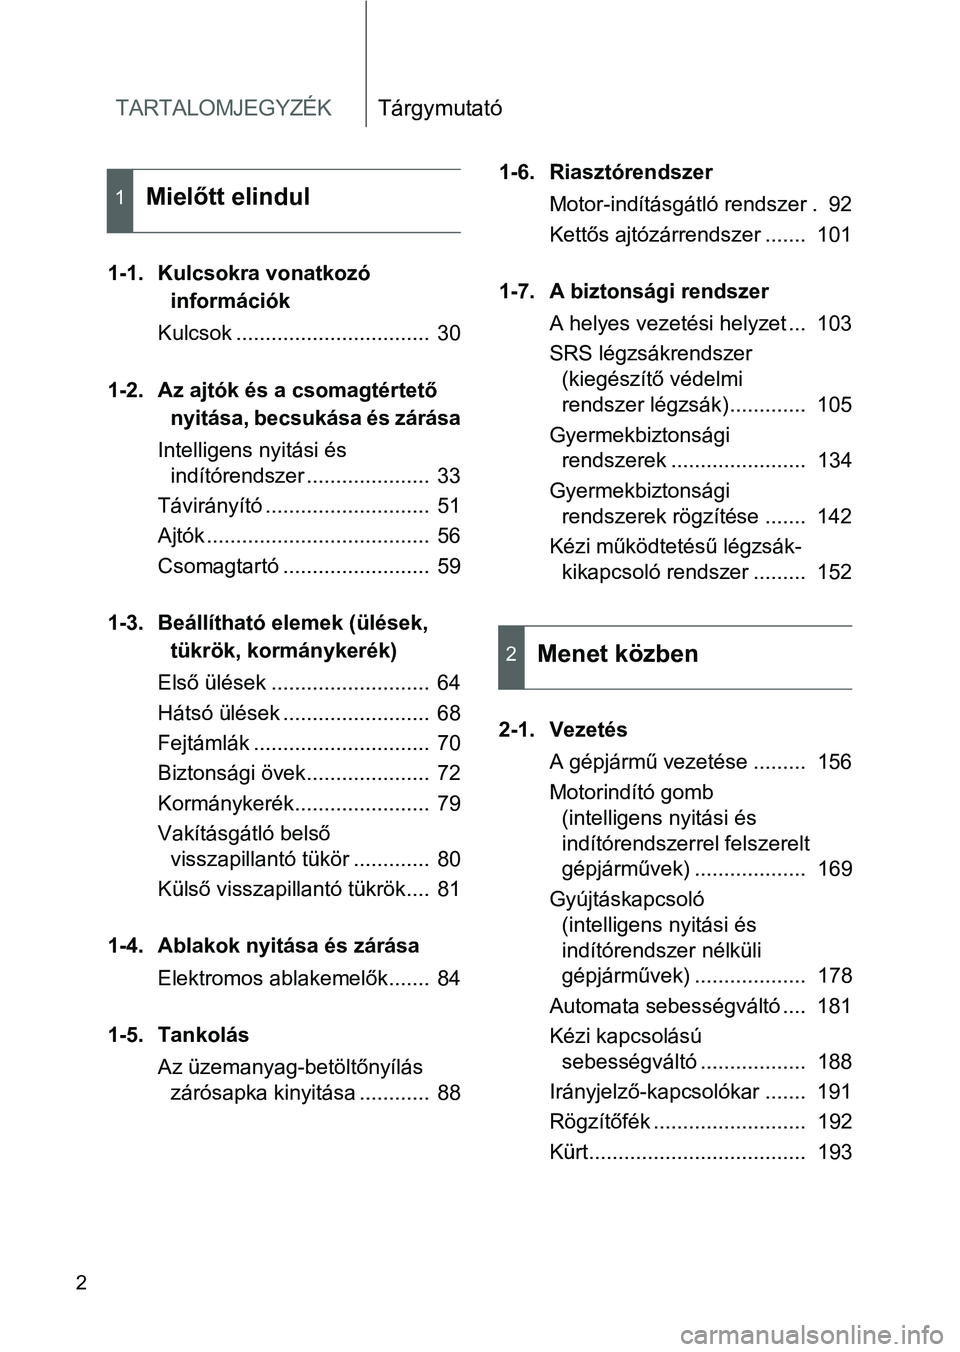 TOYOTA GT86 2016  Kezelési útmutató (in Hungarian) TARTALOMJEGYZÉKTárgymutató
2
1-1. Kulcsokra vonatkozó 
információk
Kulcsok .................................  30
1-2. Az ajtók és a csomagtértető 
nyitása, becsukása és zárása
Intellige